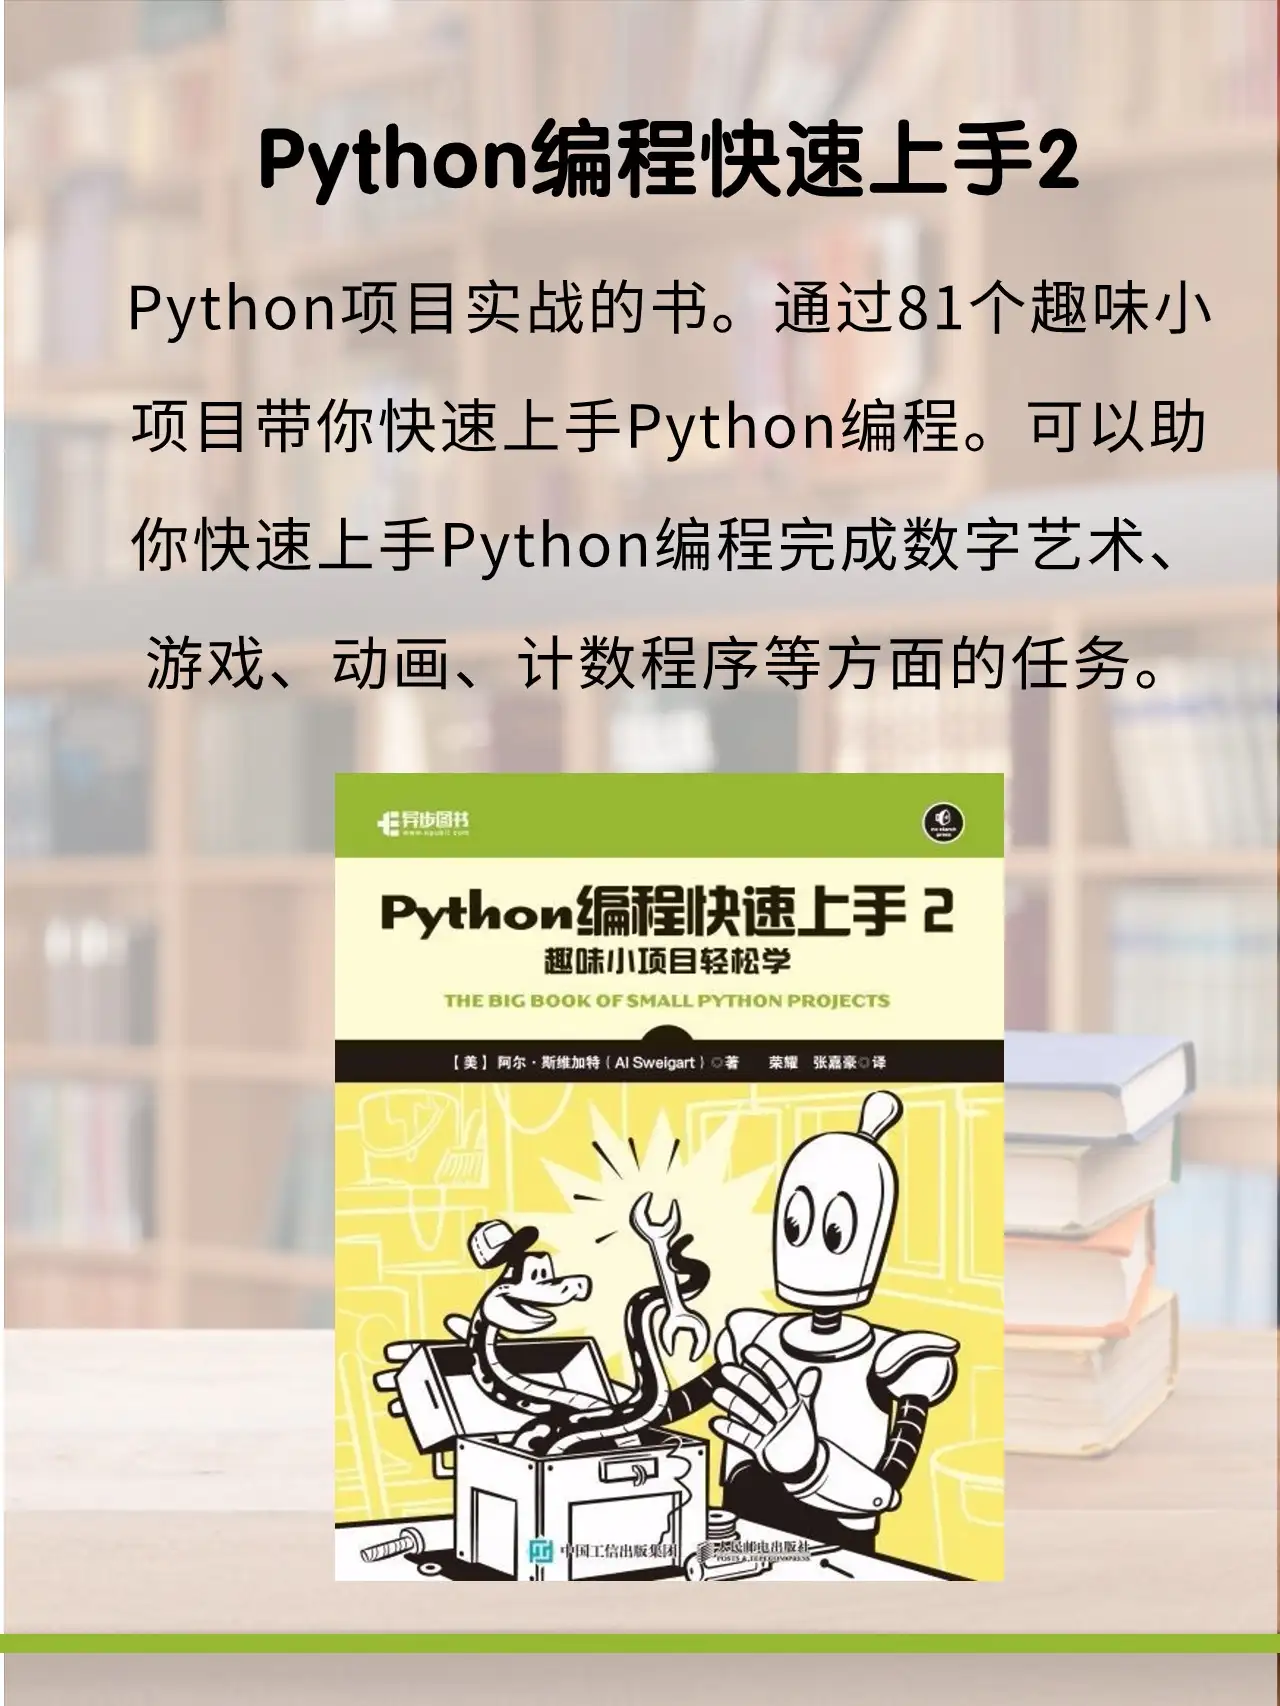 有哪些Python书籍是程序员强烈推荐？